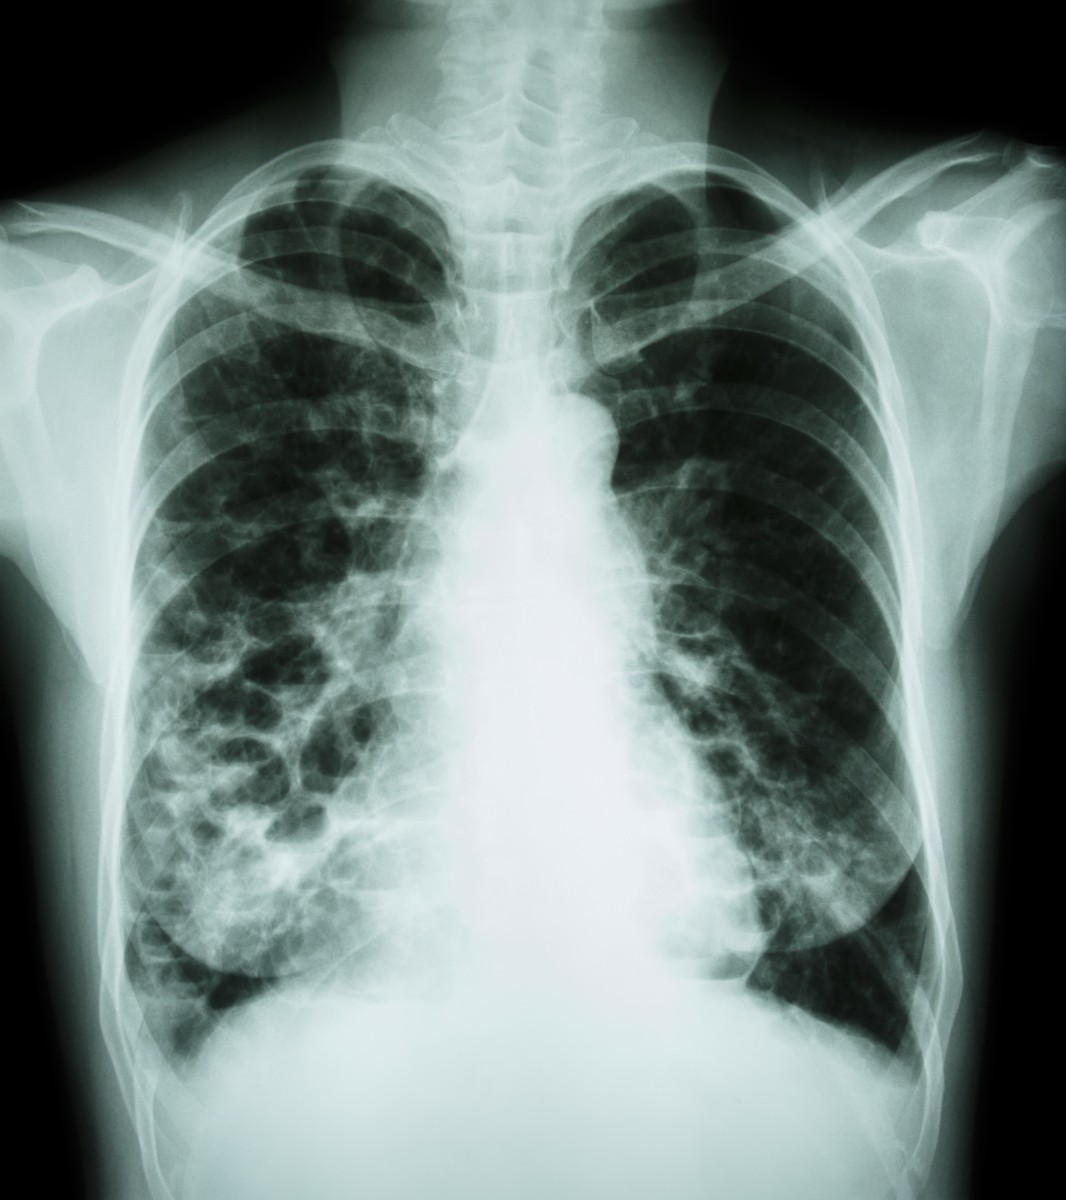 rare lung disease and sarcoidosis